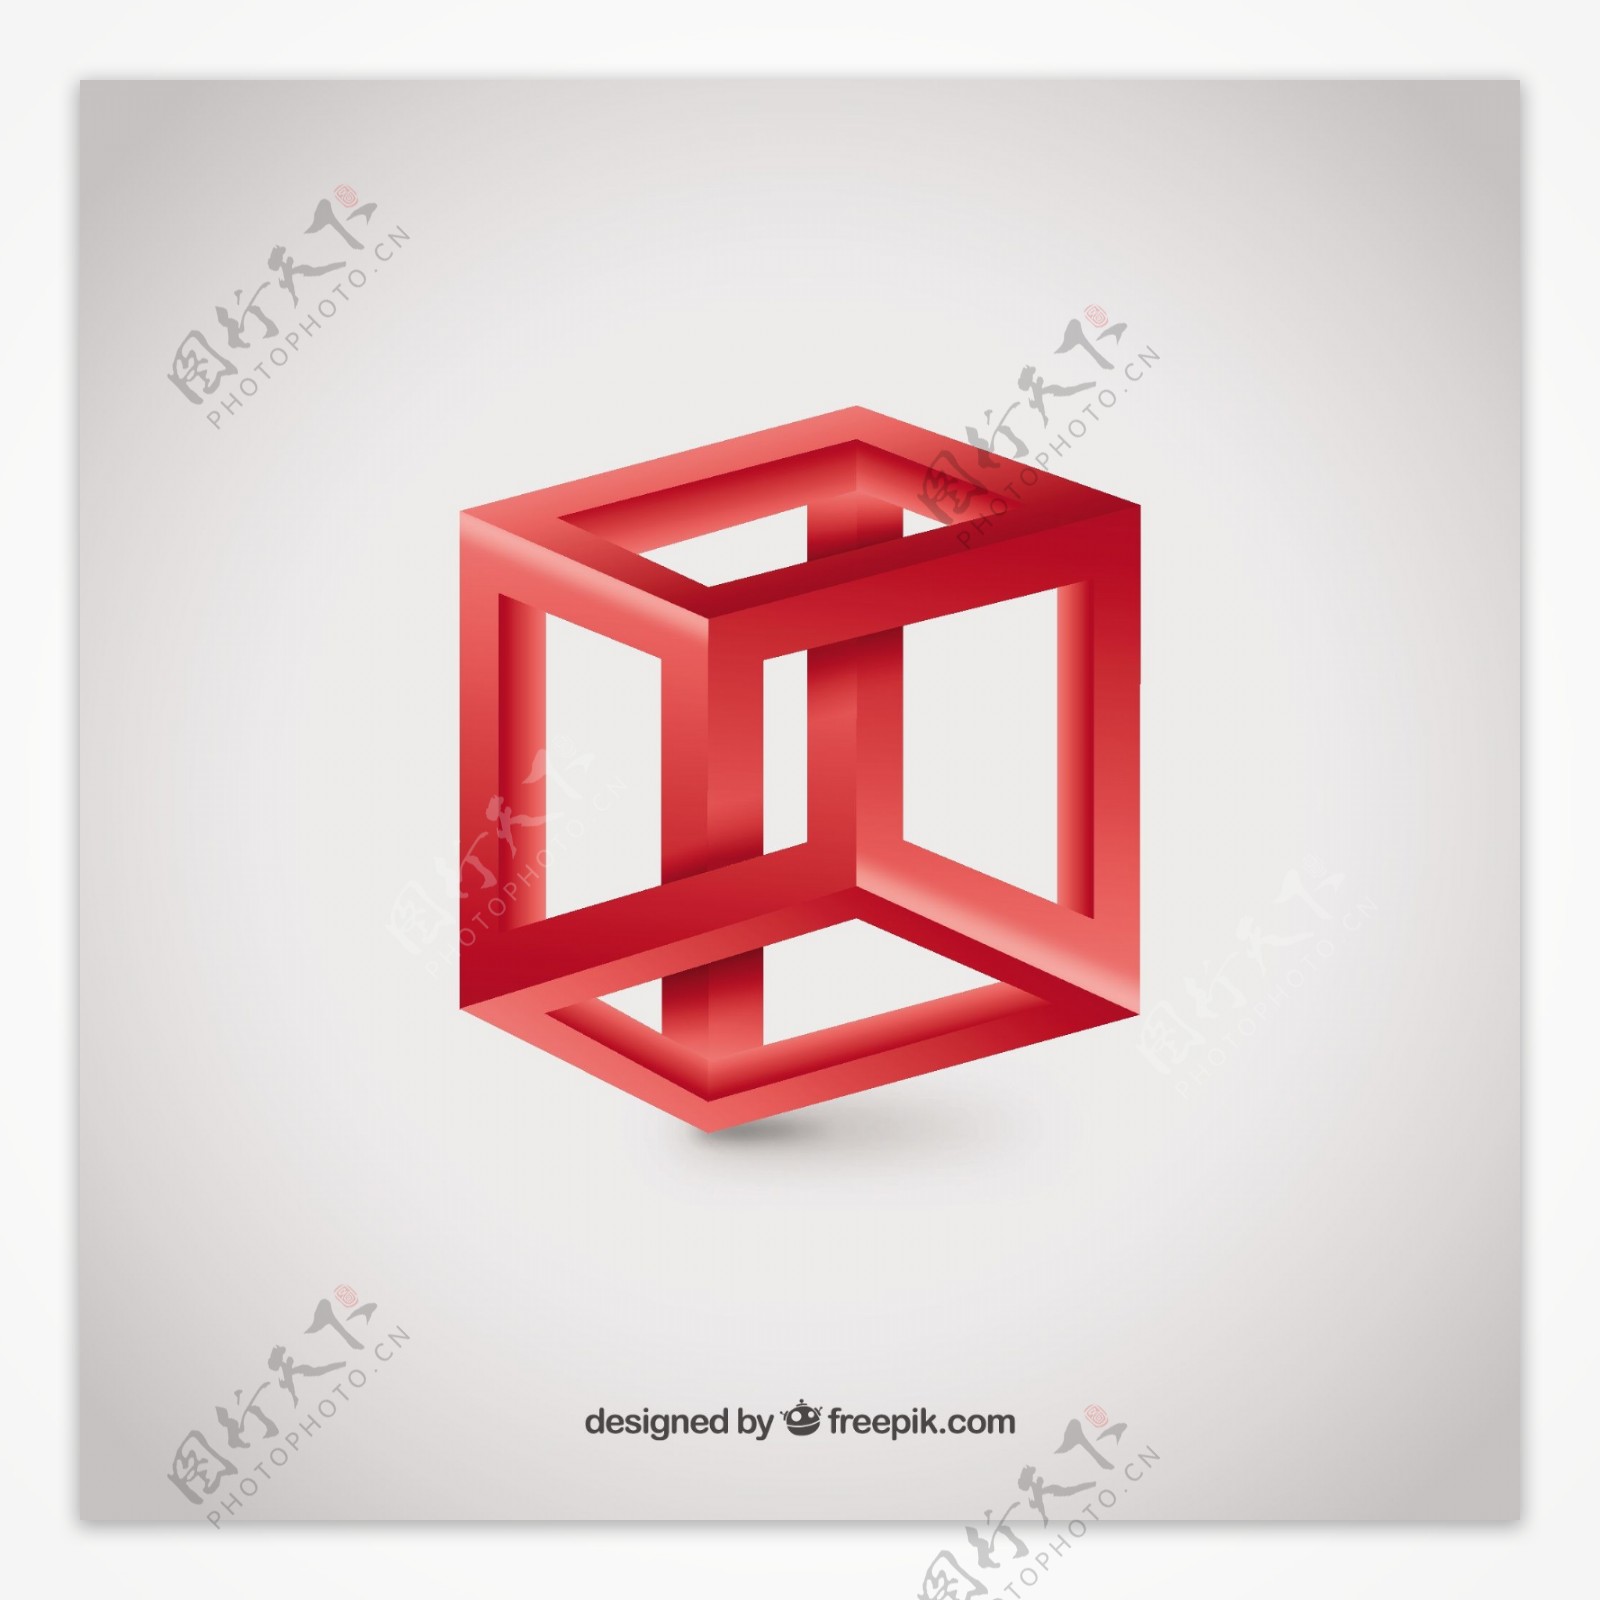 三维立方体的标志